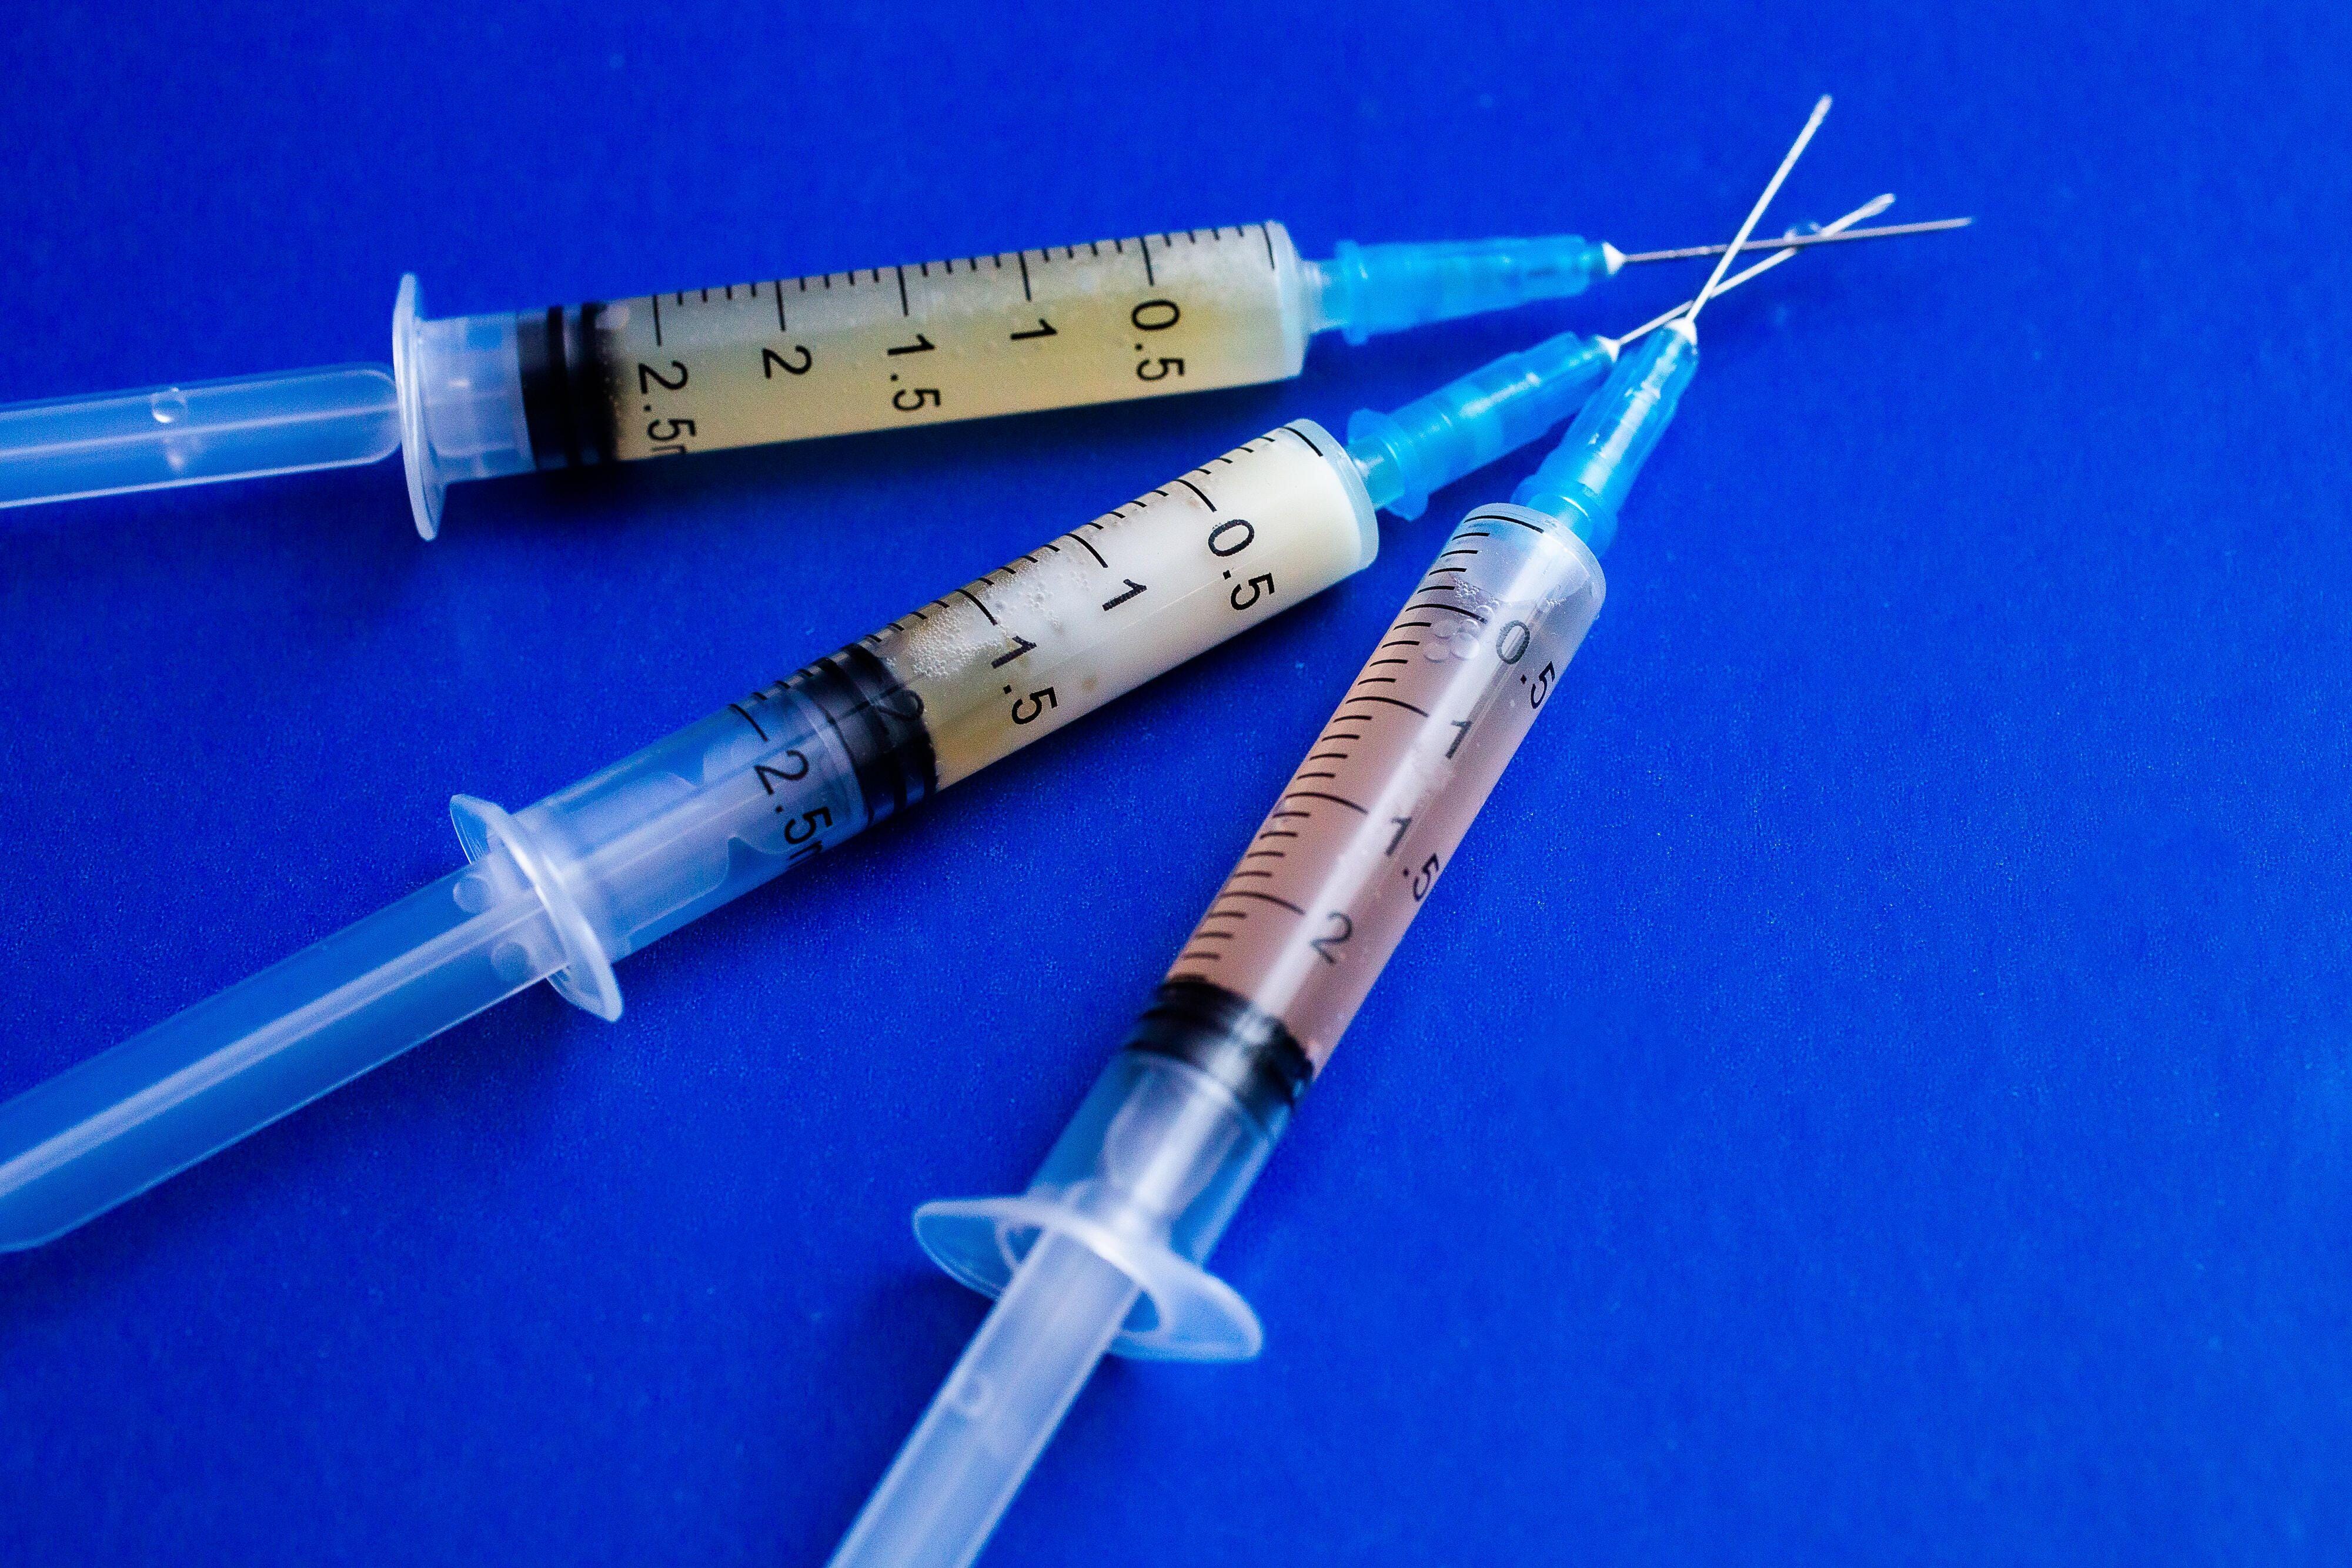 Three syringes